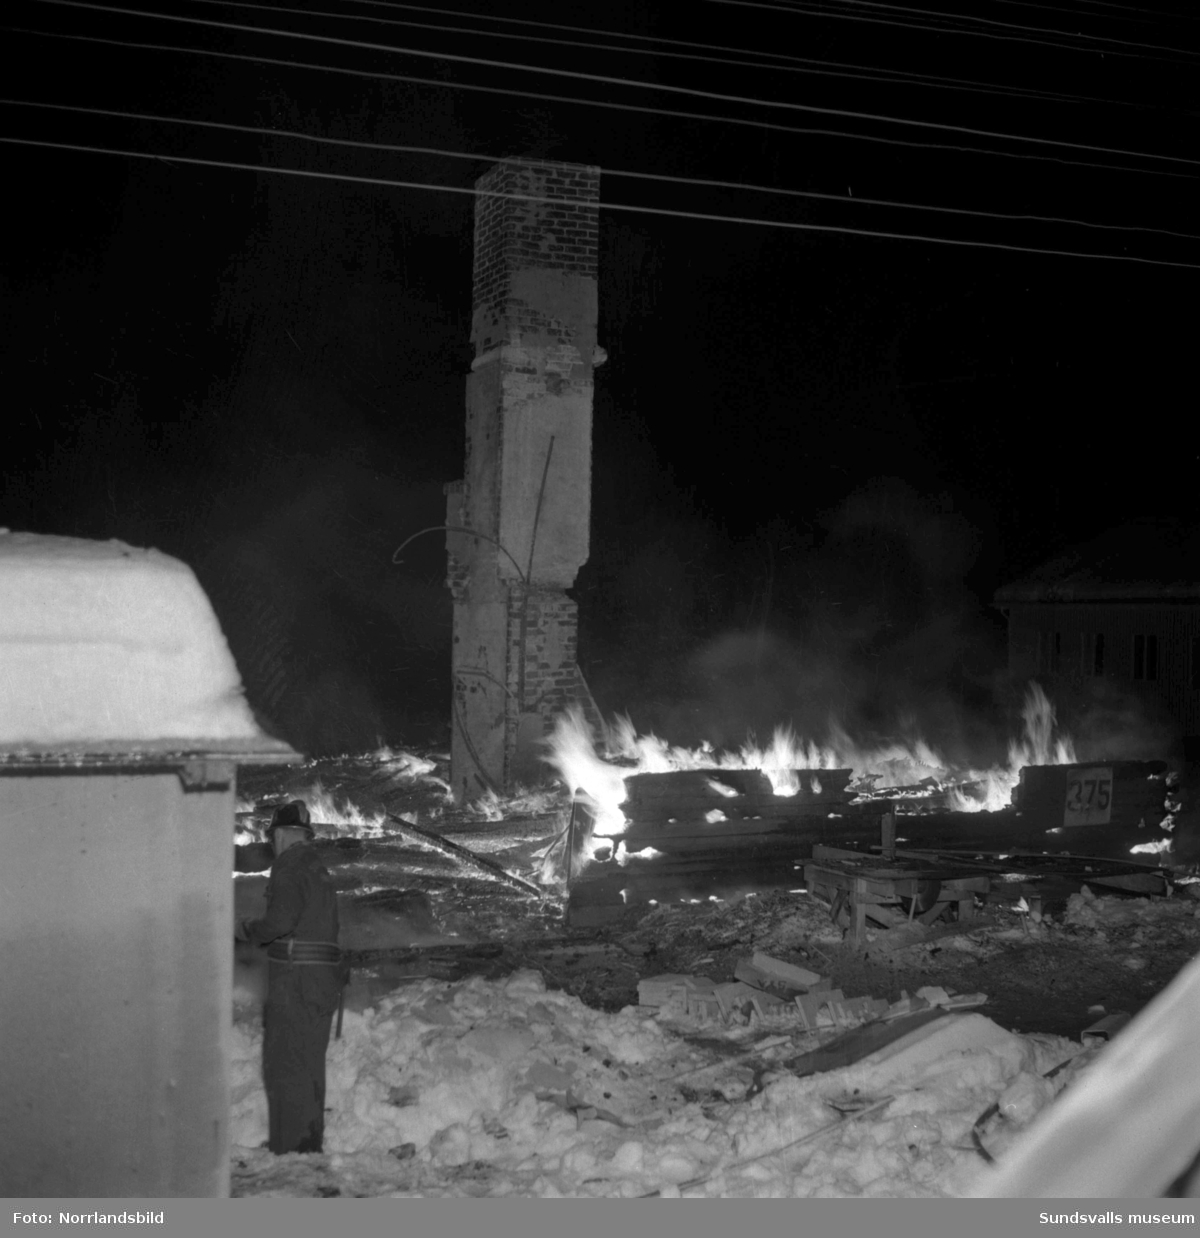 En fastighet i Hov, Selånger, brann ner till grunden i januari 1953. Huset var det gamla stationshuset vid järnvägshållplatsen i Grönängen och det hade nyligen köpts och flyttats till Hov av köpman Birger Olsson som räddades med hjälp av grannar som reste en stege till hans sovrum på andra våningen.